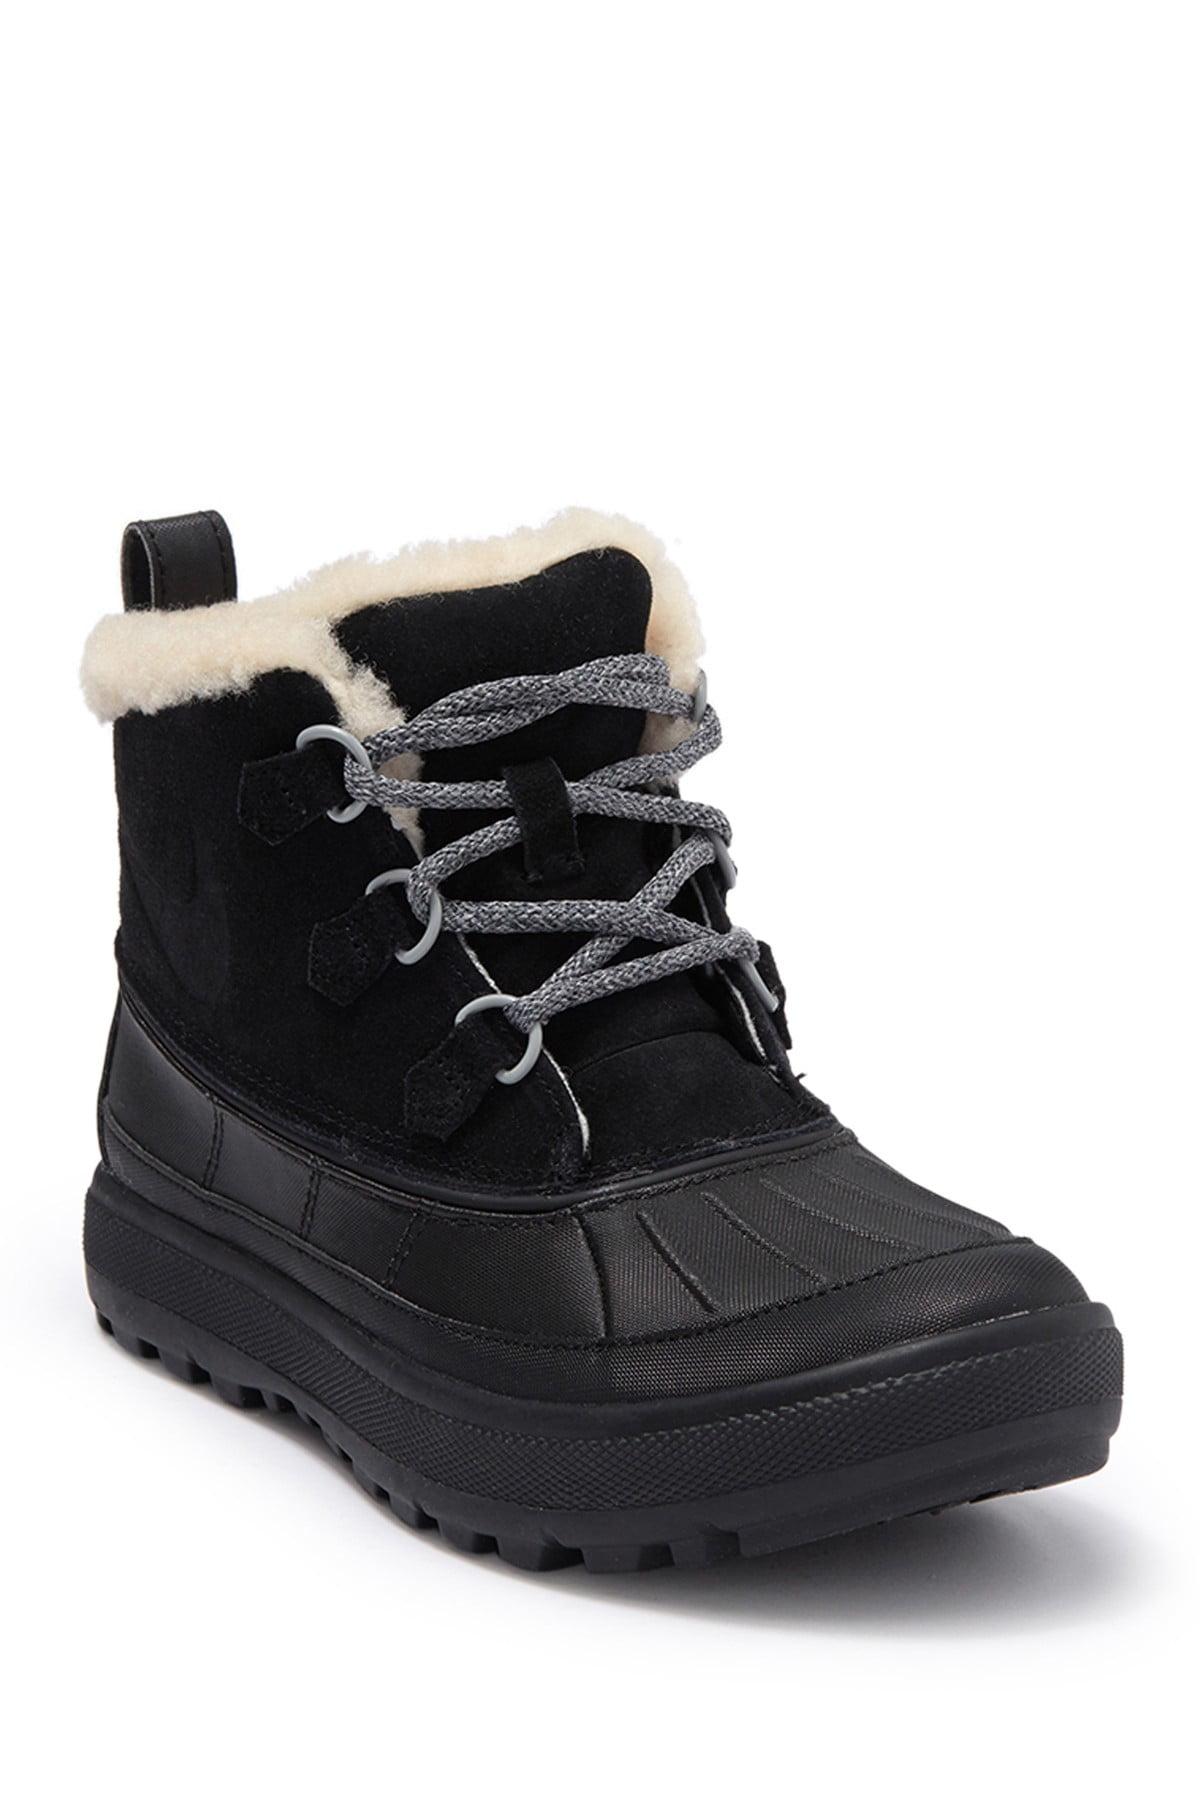 Nike Woodside Faux Fur Lined Chukka Boot in Black | Lyst